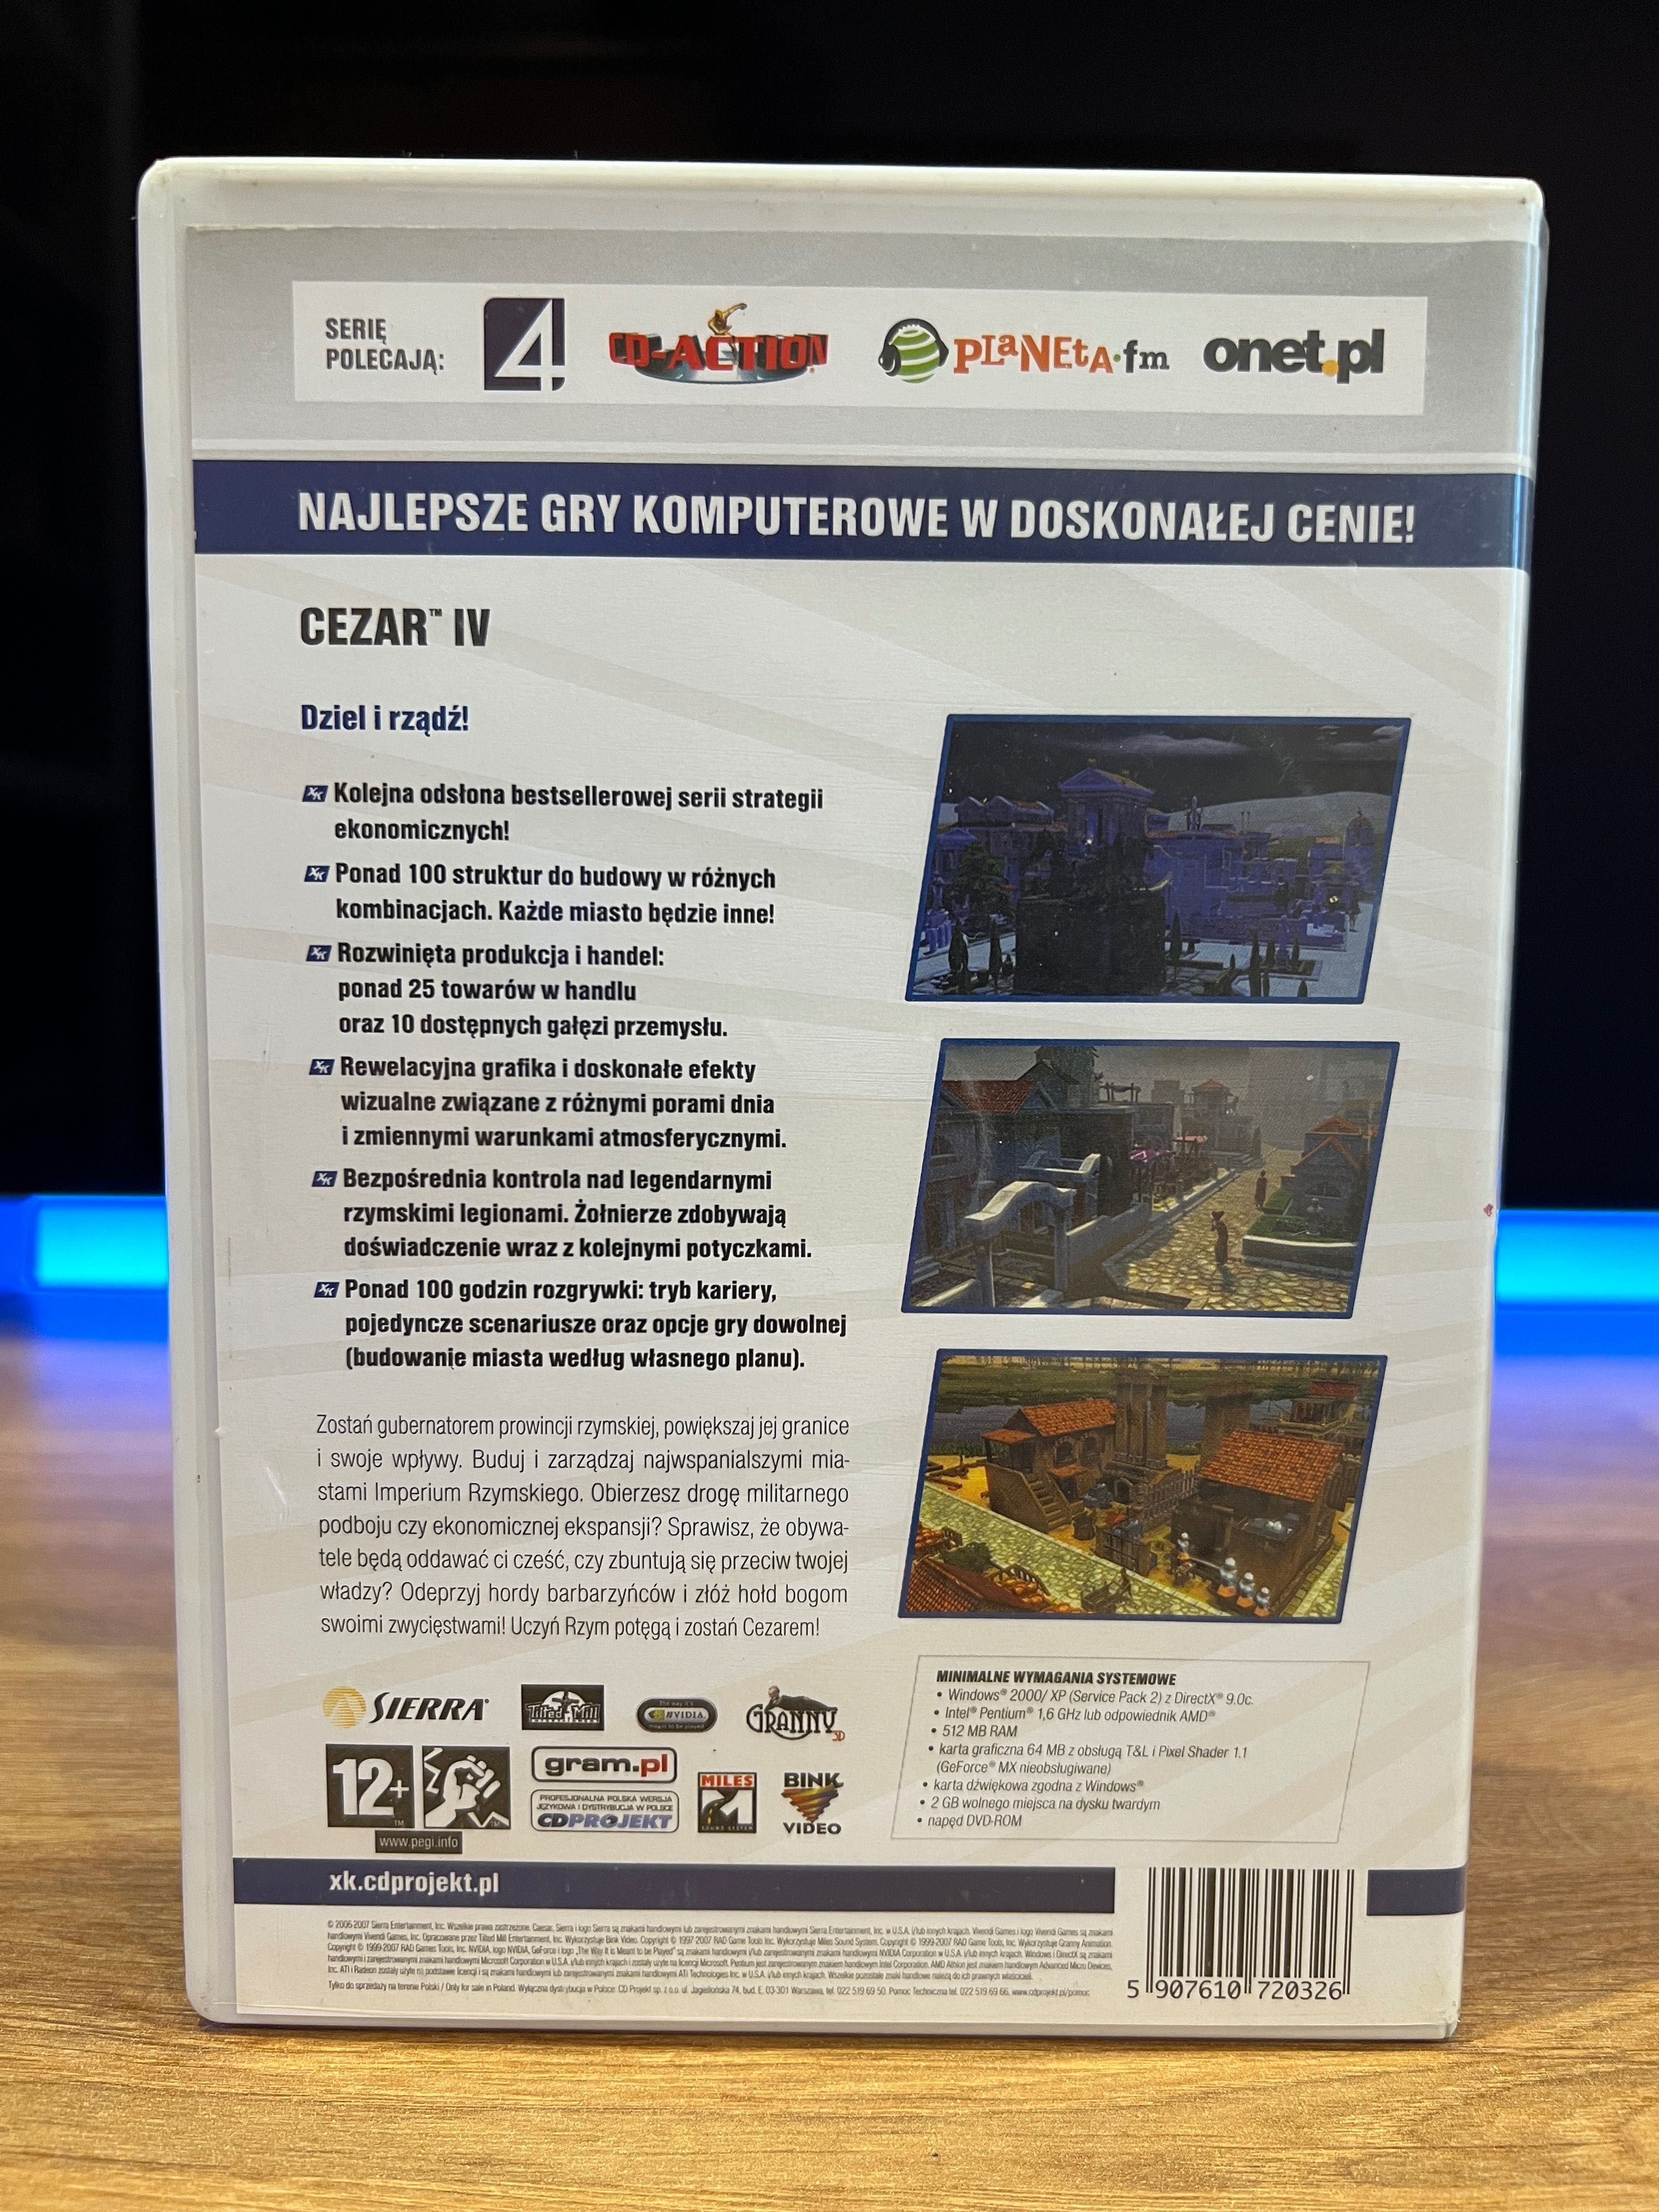 Cezar IV (PC PL 2006) DVD BOX wydanie eXtra Klasyka